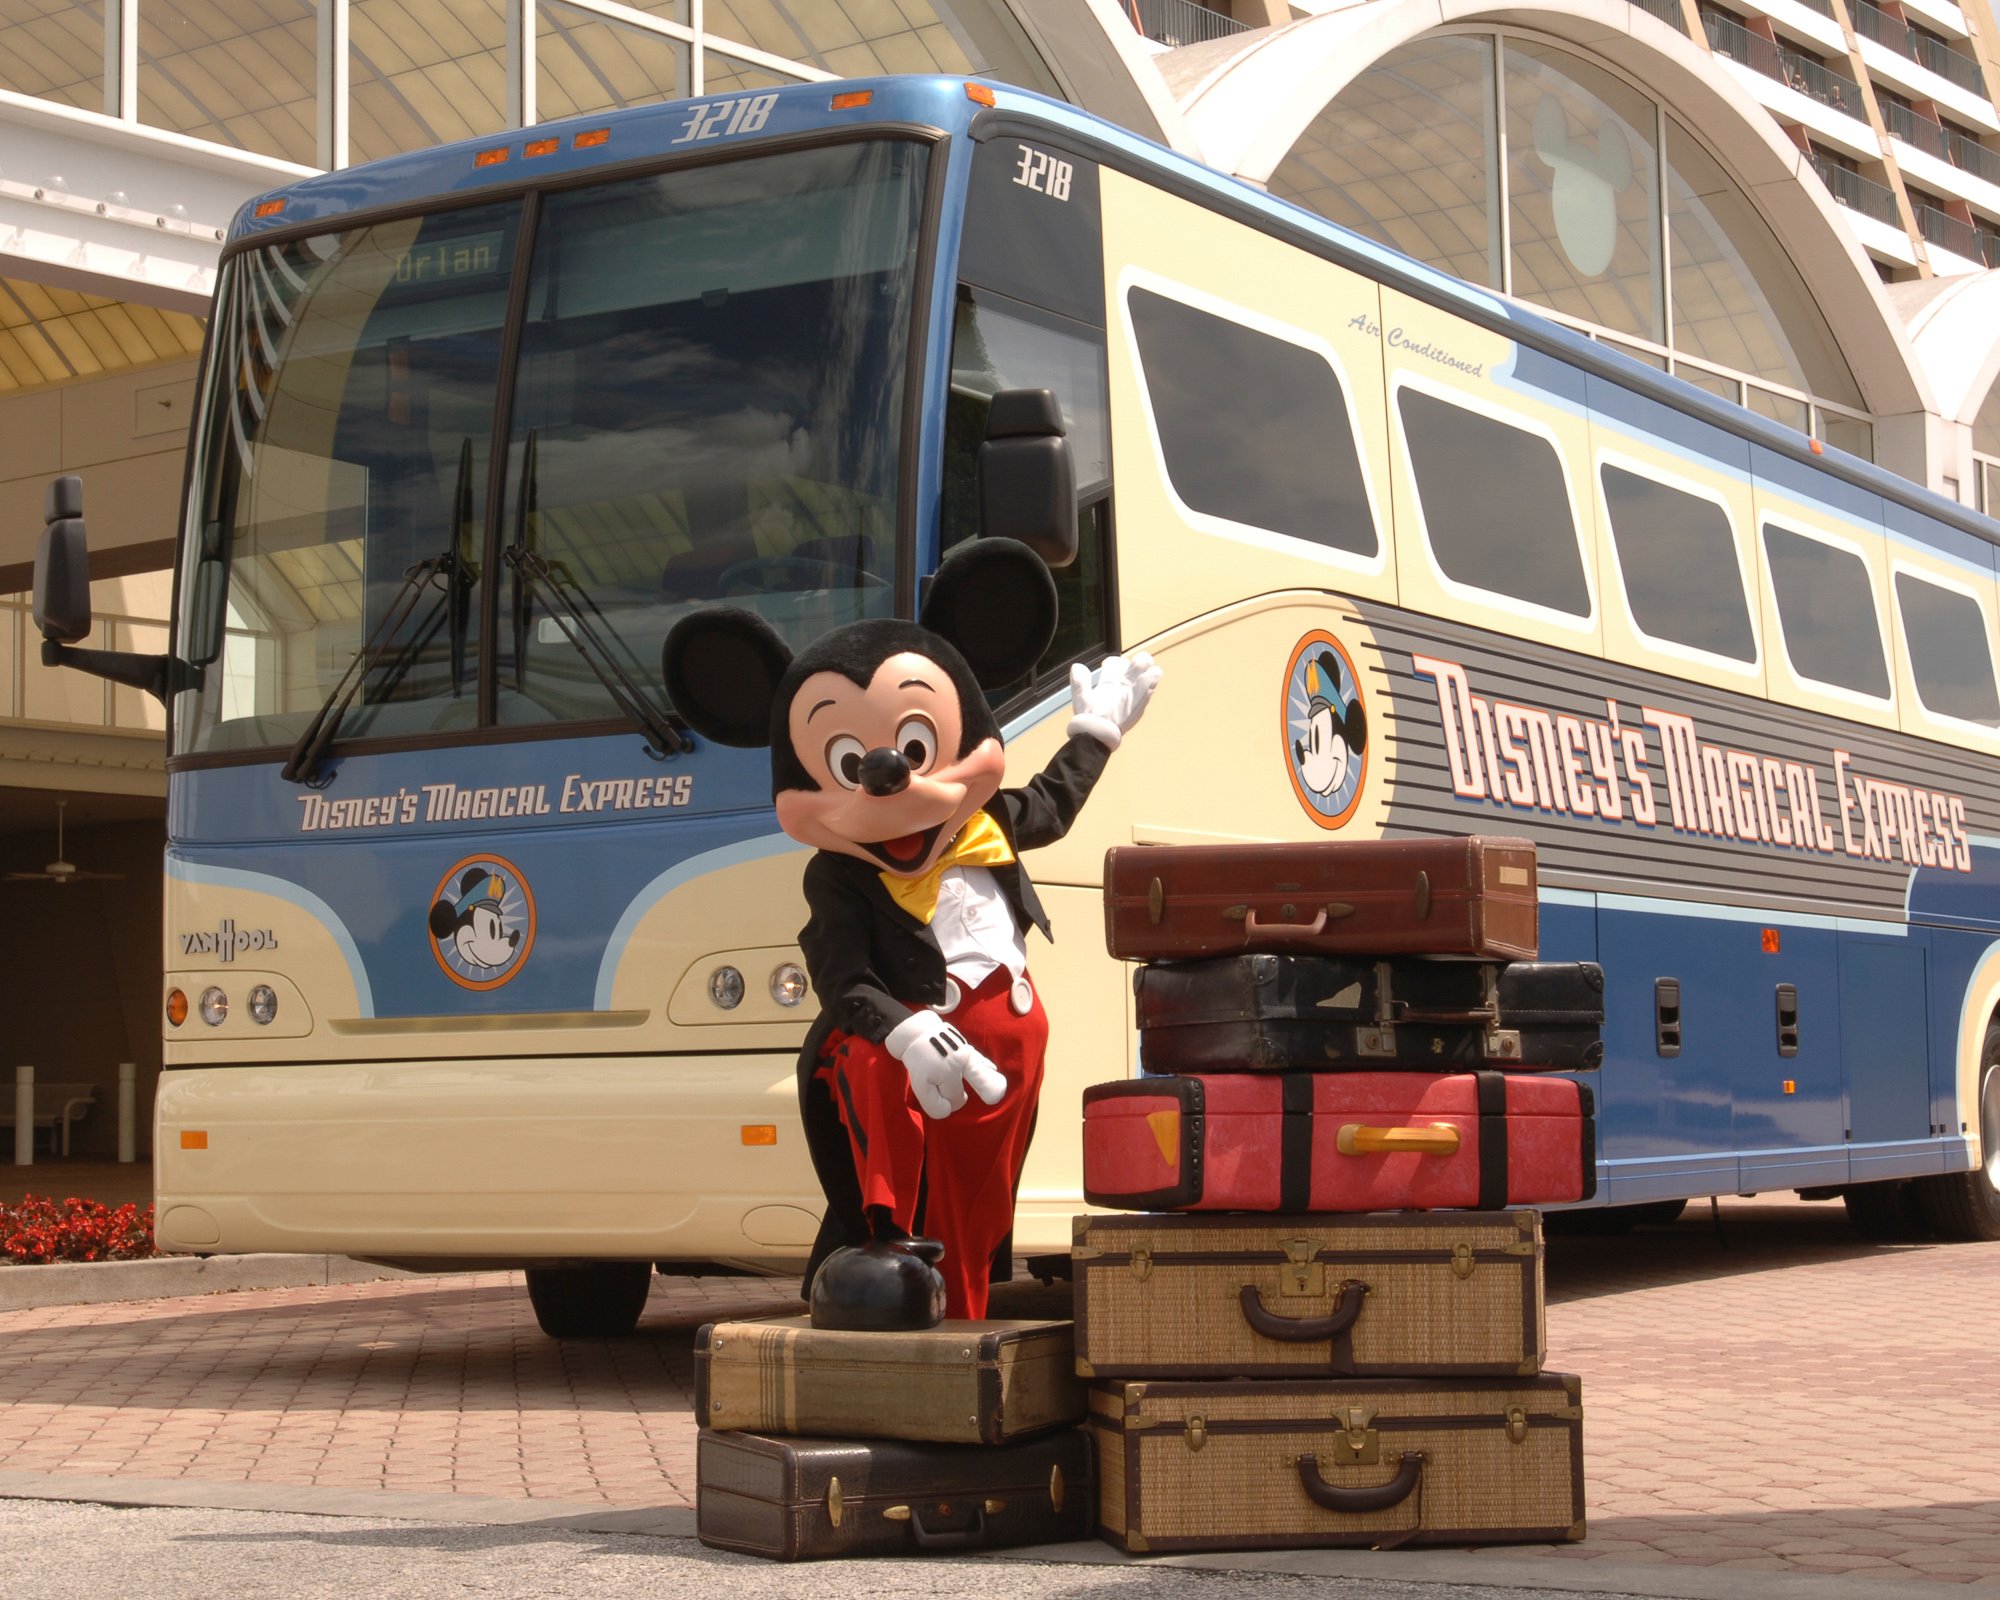 Disney's Magical Express bus